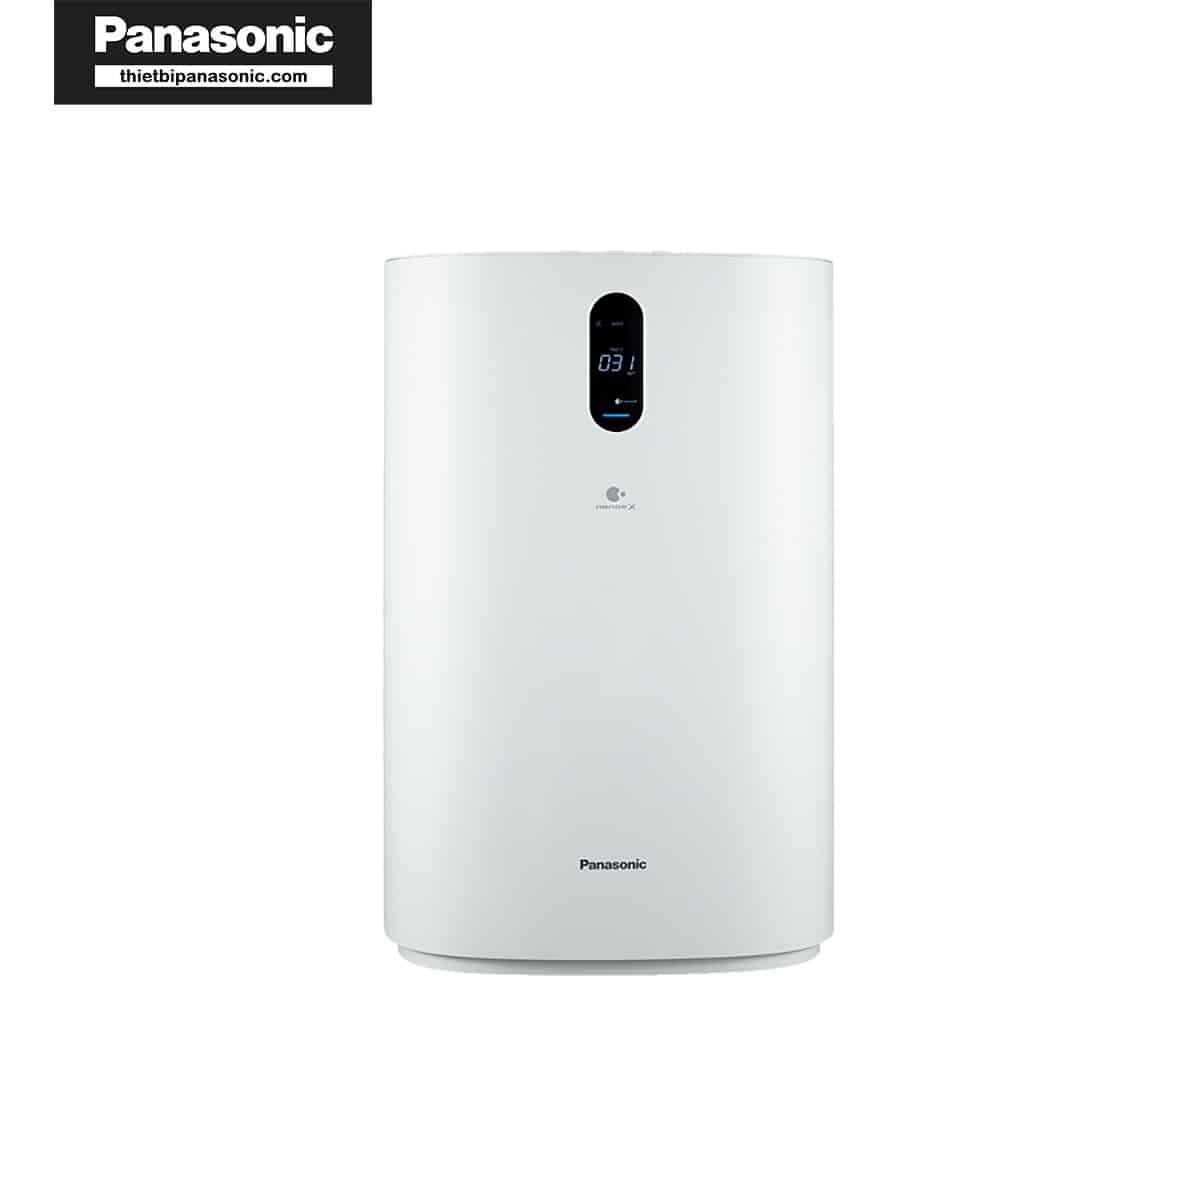 Máy lọc không khí Panasonic F-PXU70A hoạt động ổn định với màng lọc hỗn hợp của Panasonic